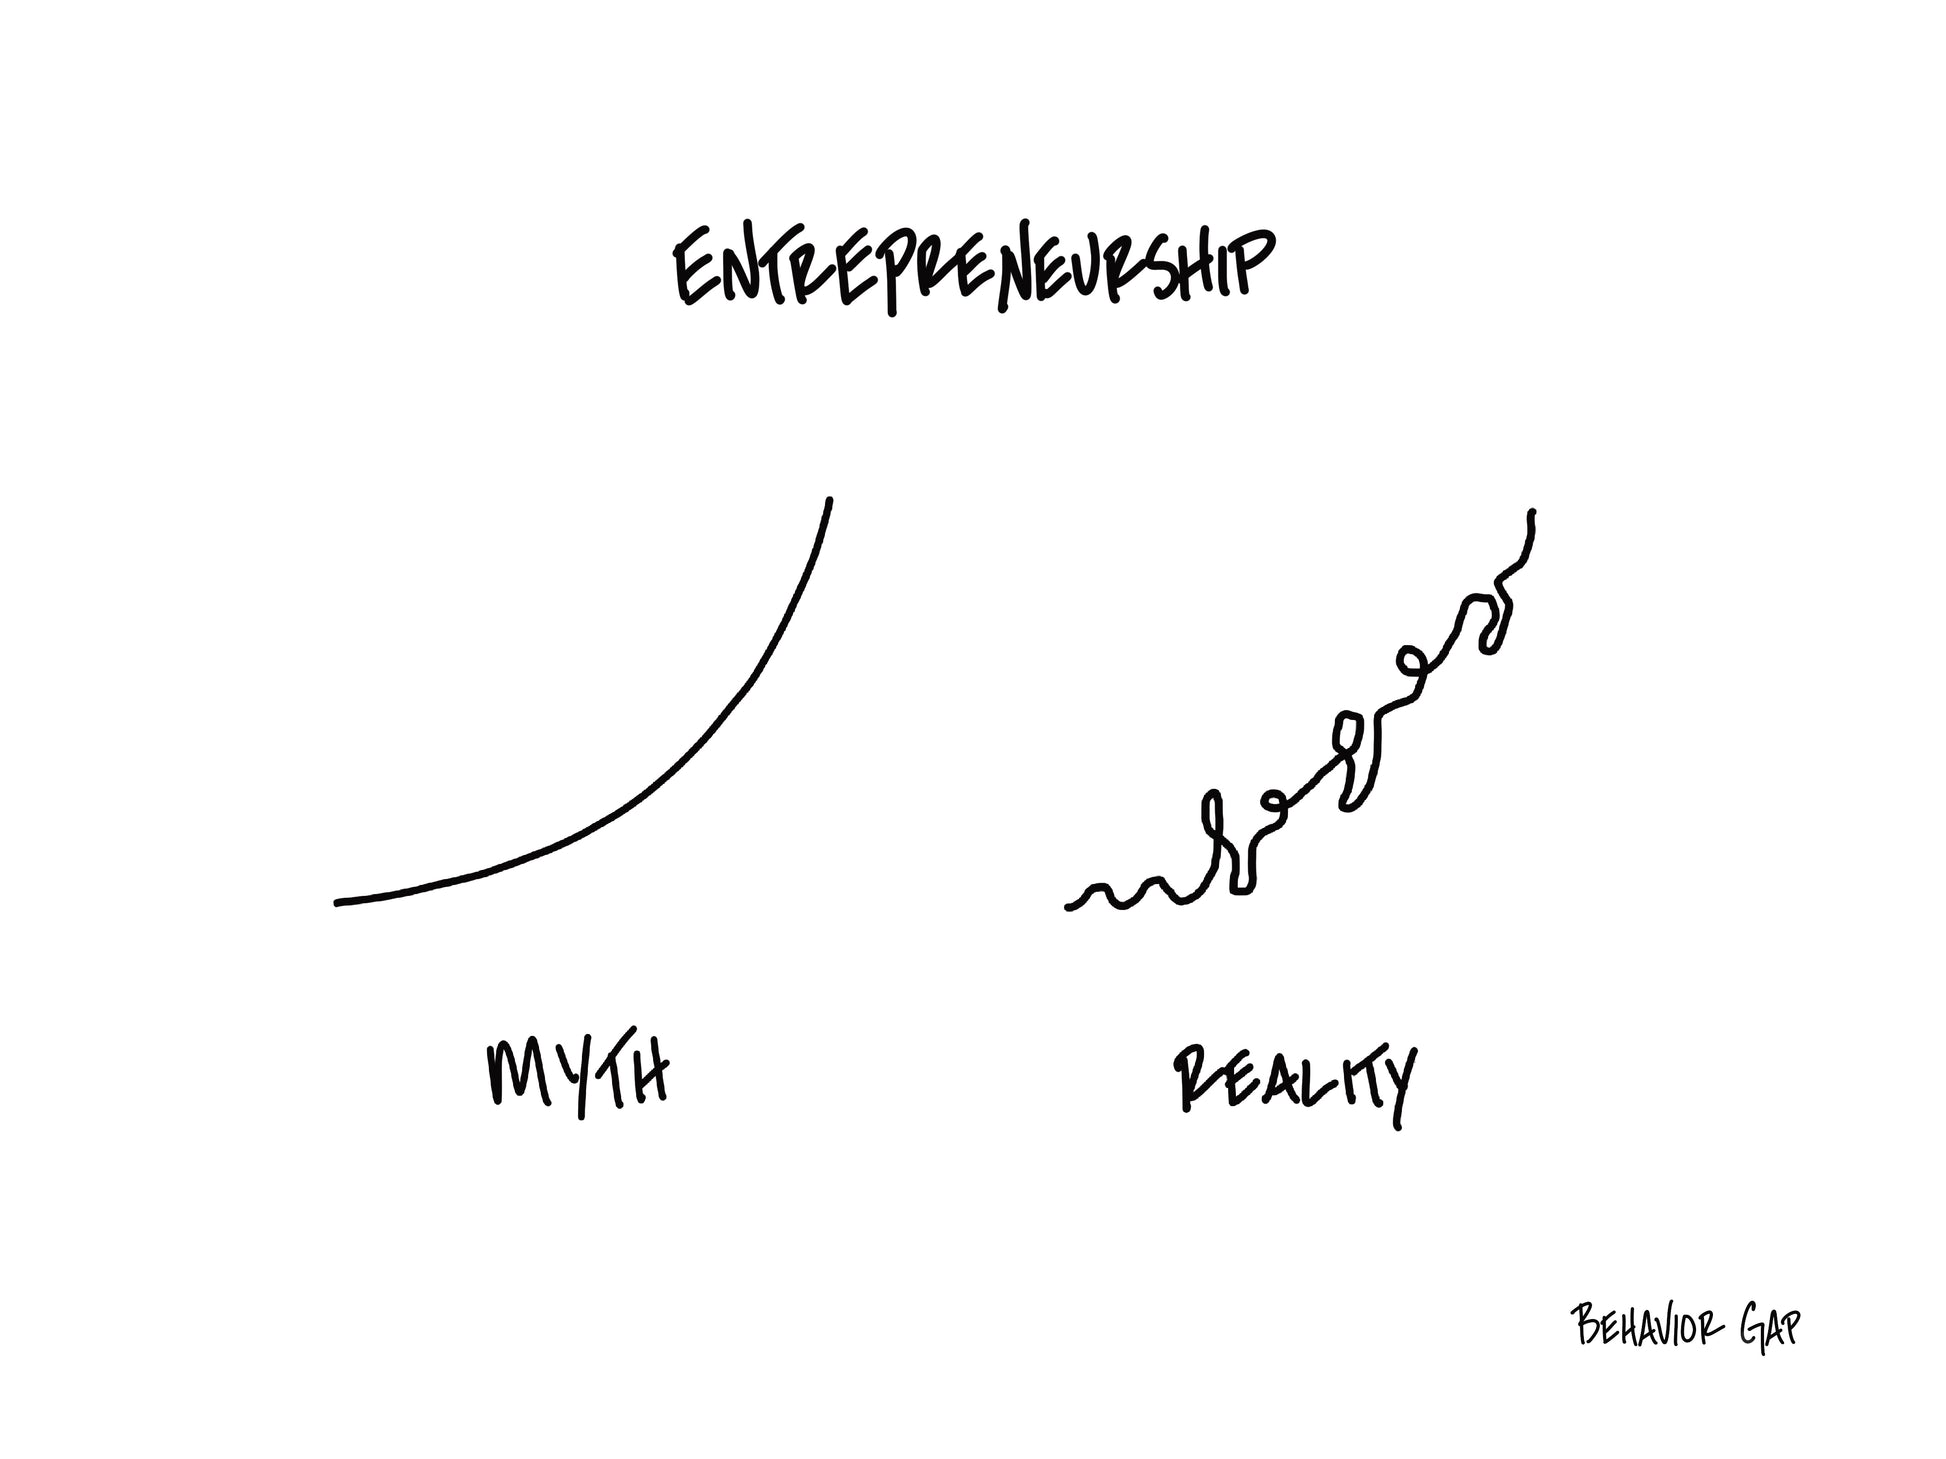 Carl Richards Behavior Gap Entrepreneurship Myth vs. Reality